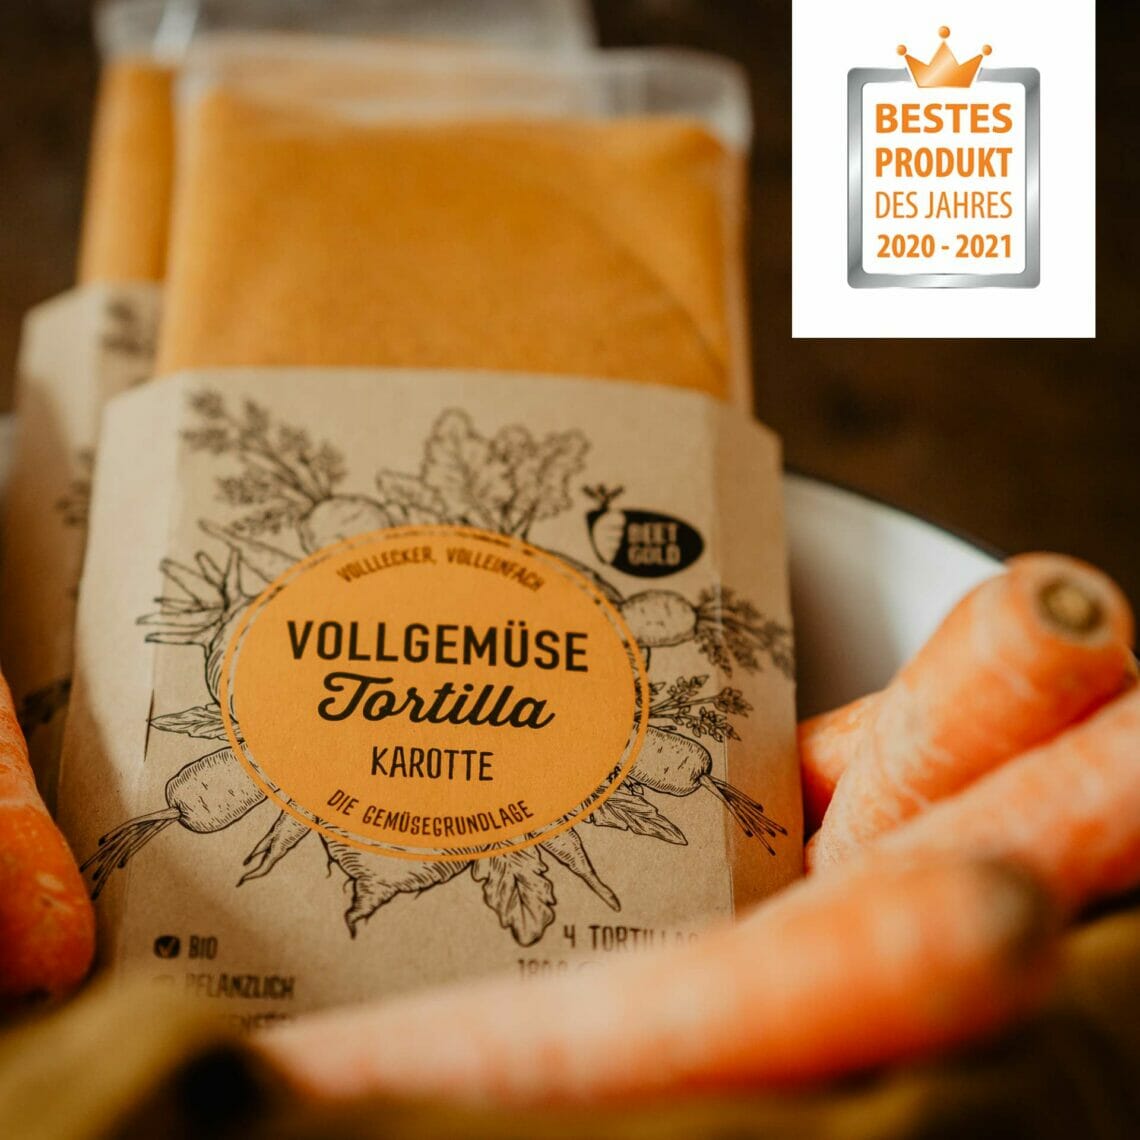 Beetgold Vollgemüse Tortillas sind bestes Produkt des Jahres 2020/2021 in der Kategorie Vegetarisch🏆🥳 Bei der Verbraucherwahl zum Besten ...